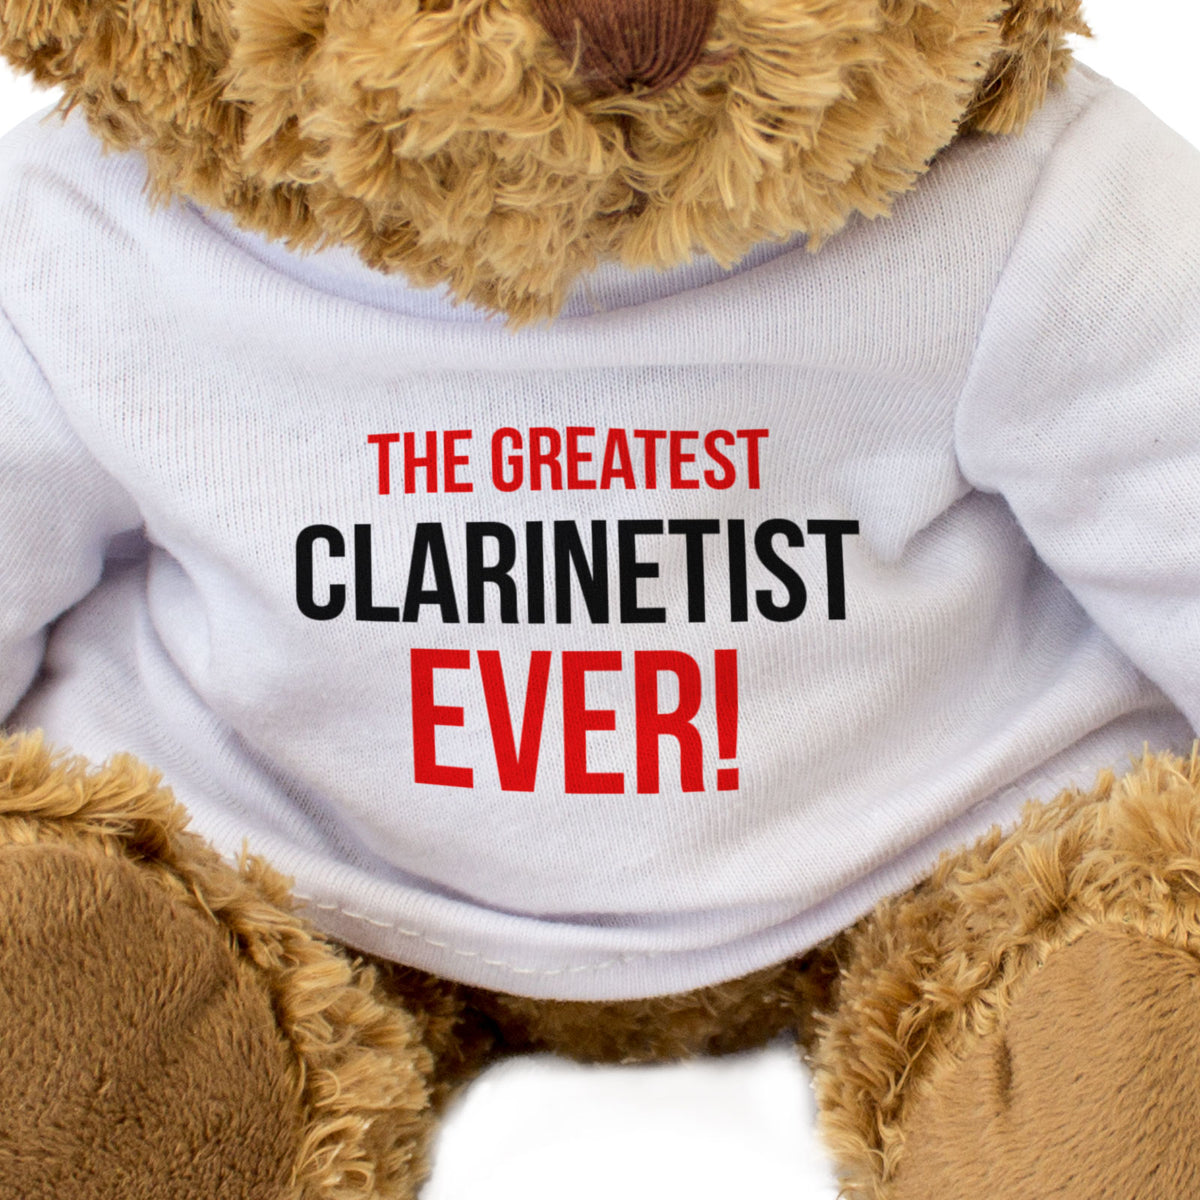 The Greatest Clarinetist Ever - Teddy Bear